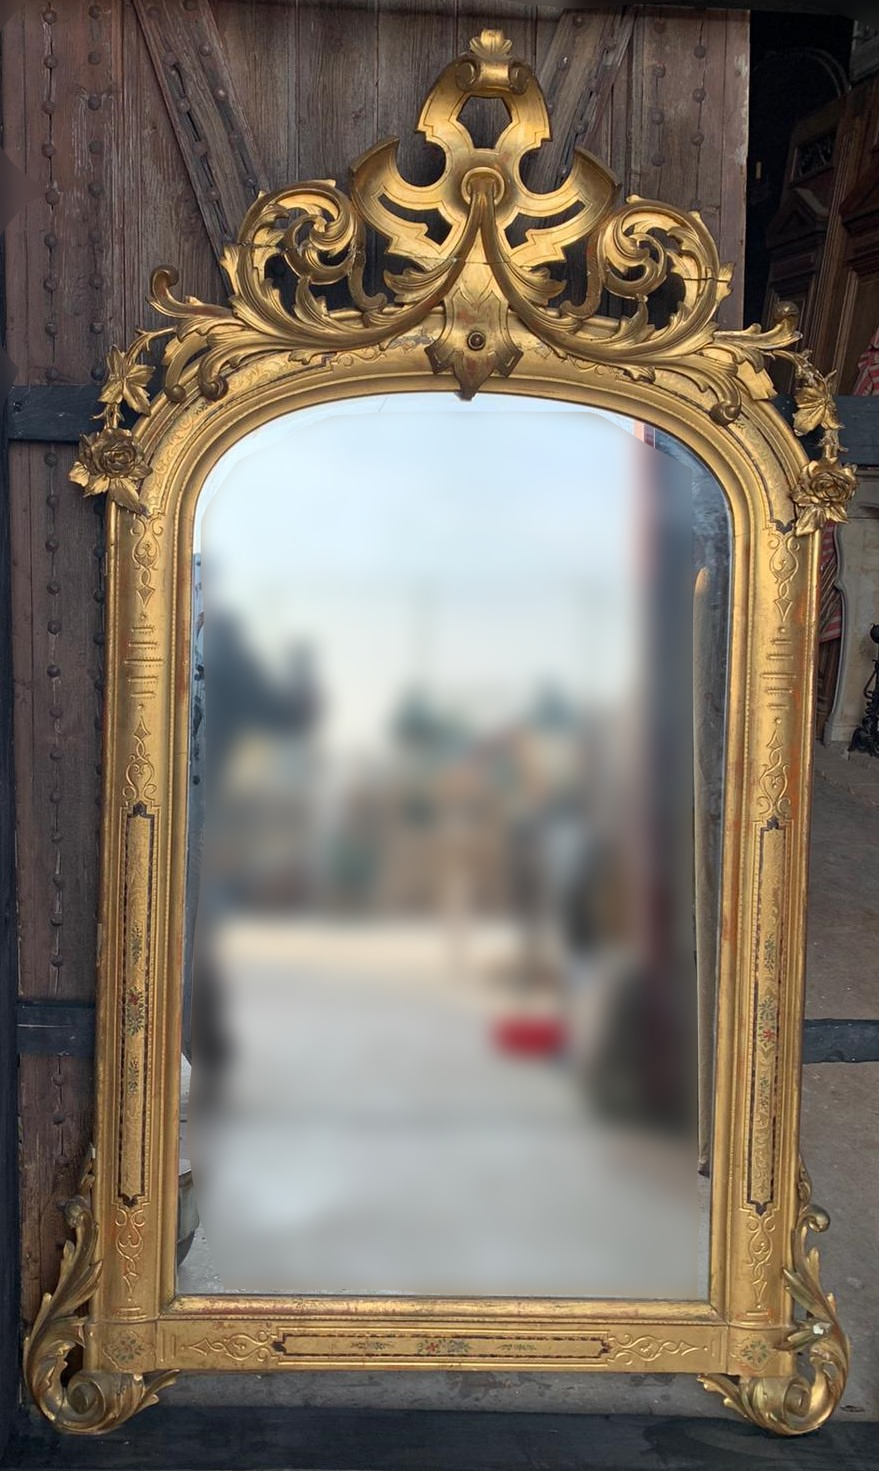 specc401 - specchiera dorata, epoca '800, misura cm l 107 x h 175